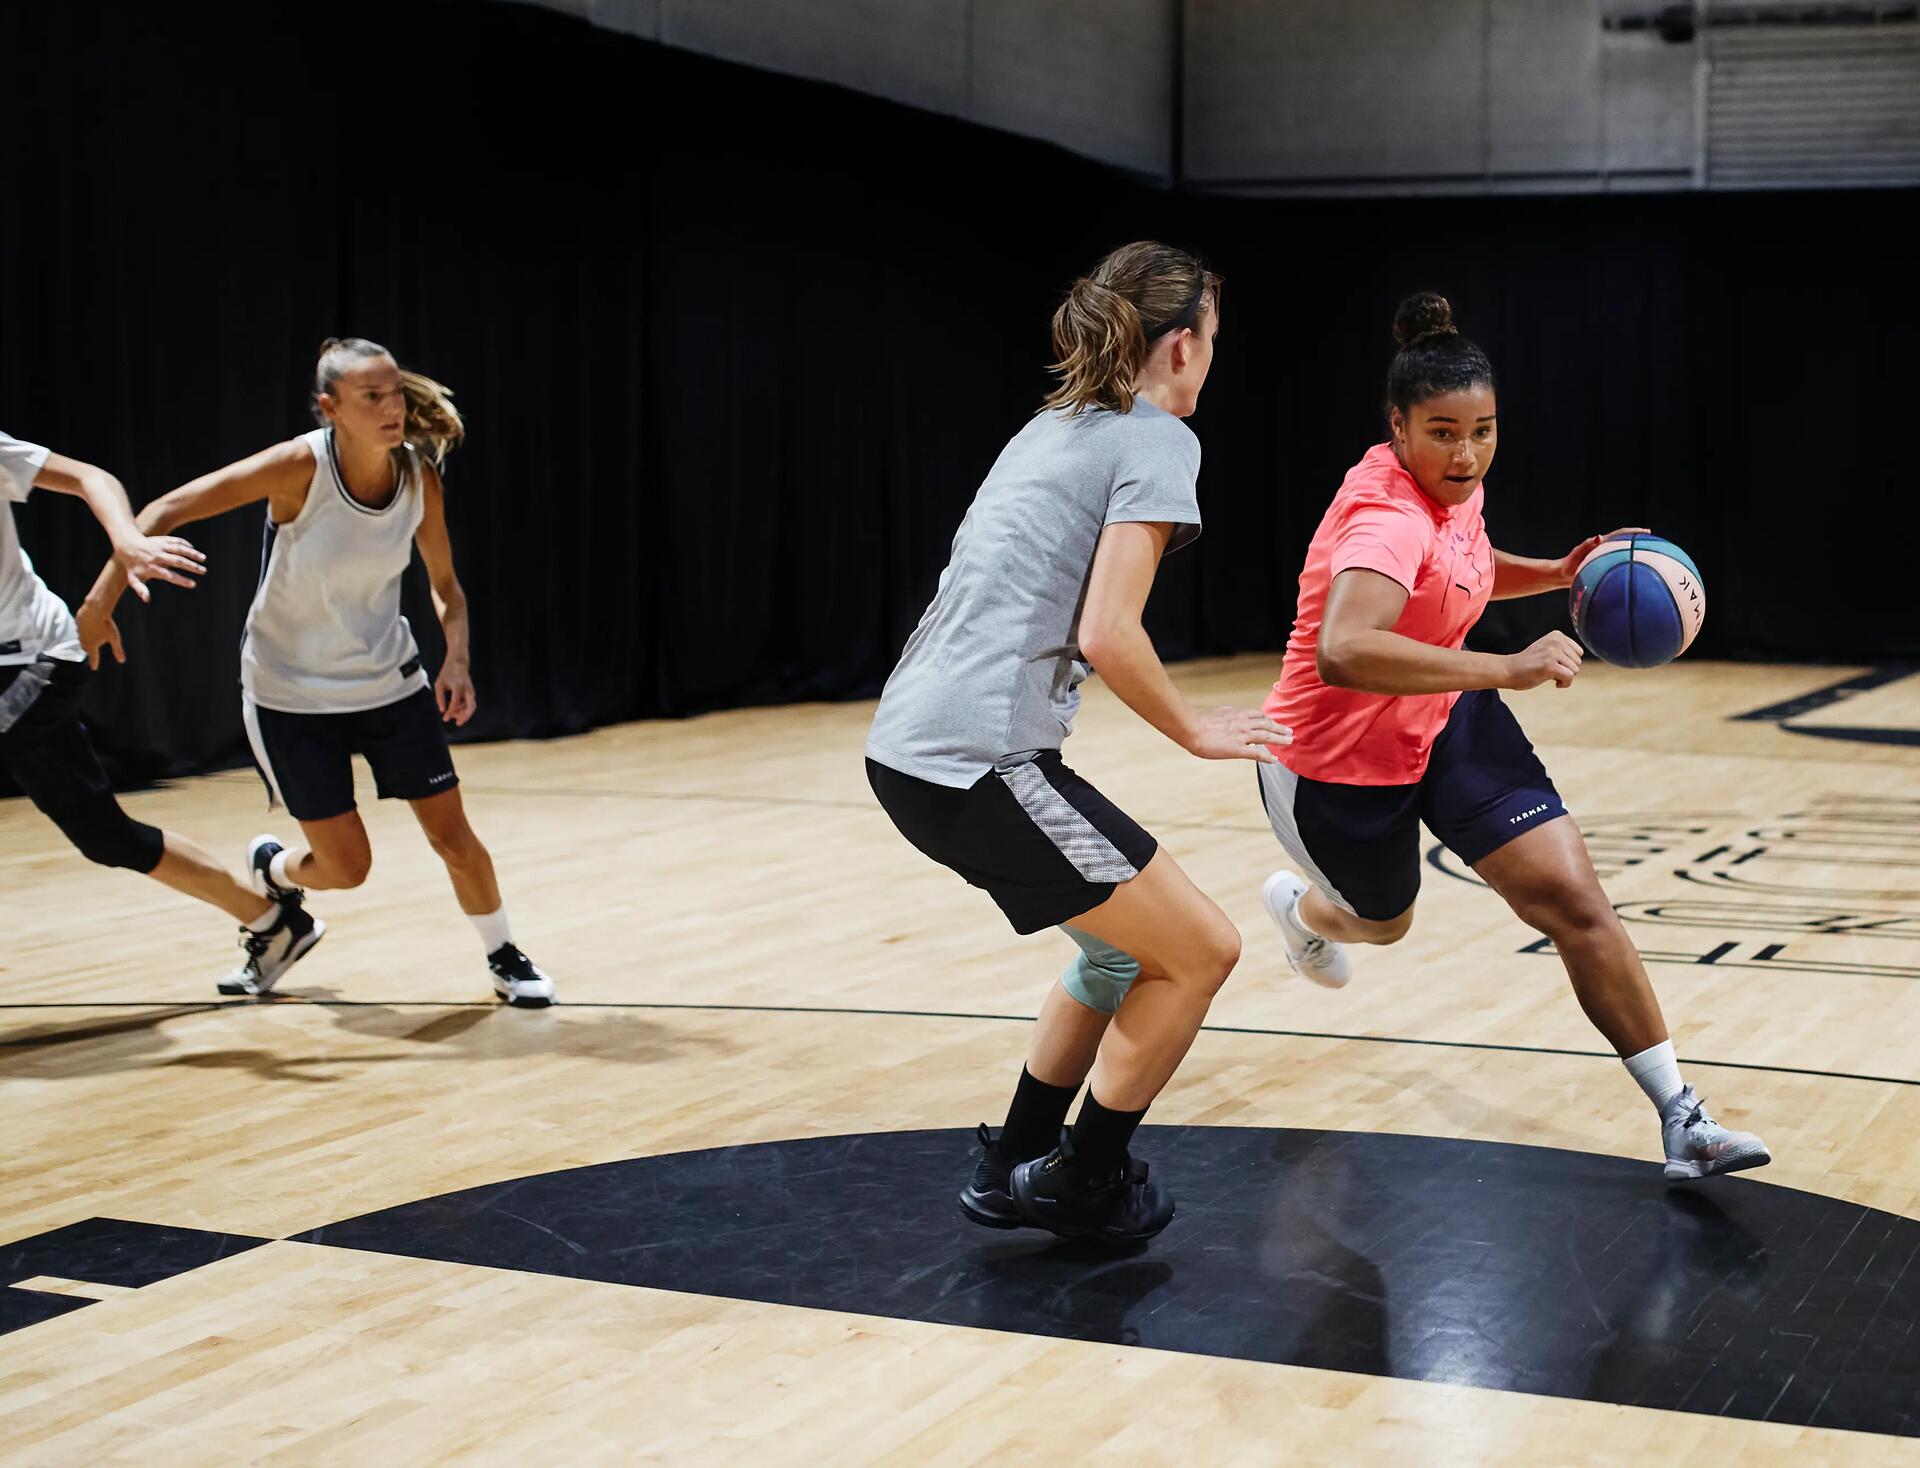 ¿Qué es mejor entrenar baloncesto en cancha cubierta o al aire libre?